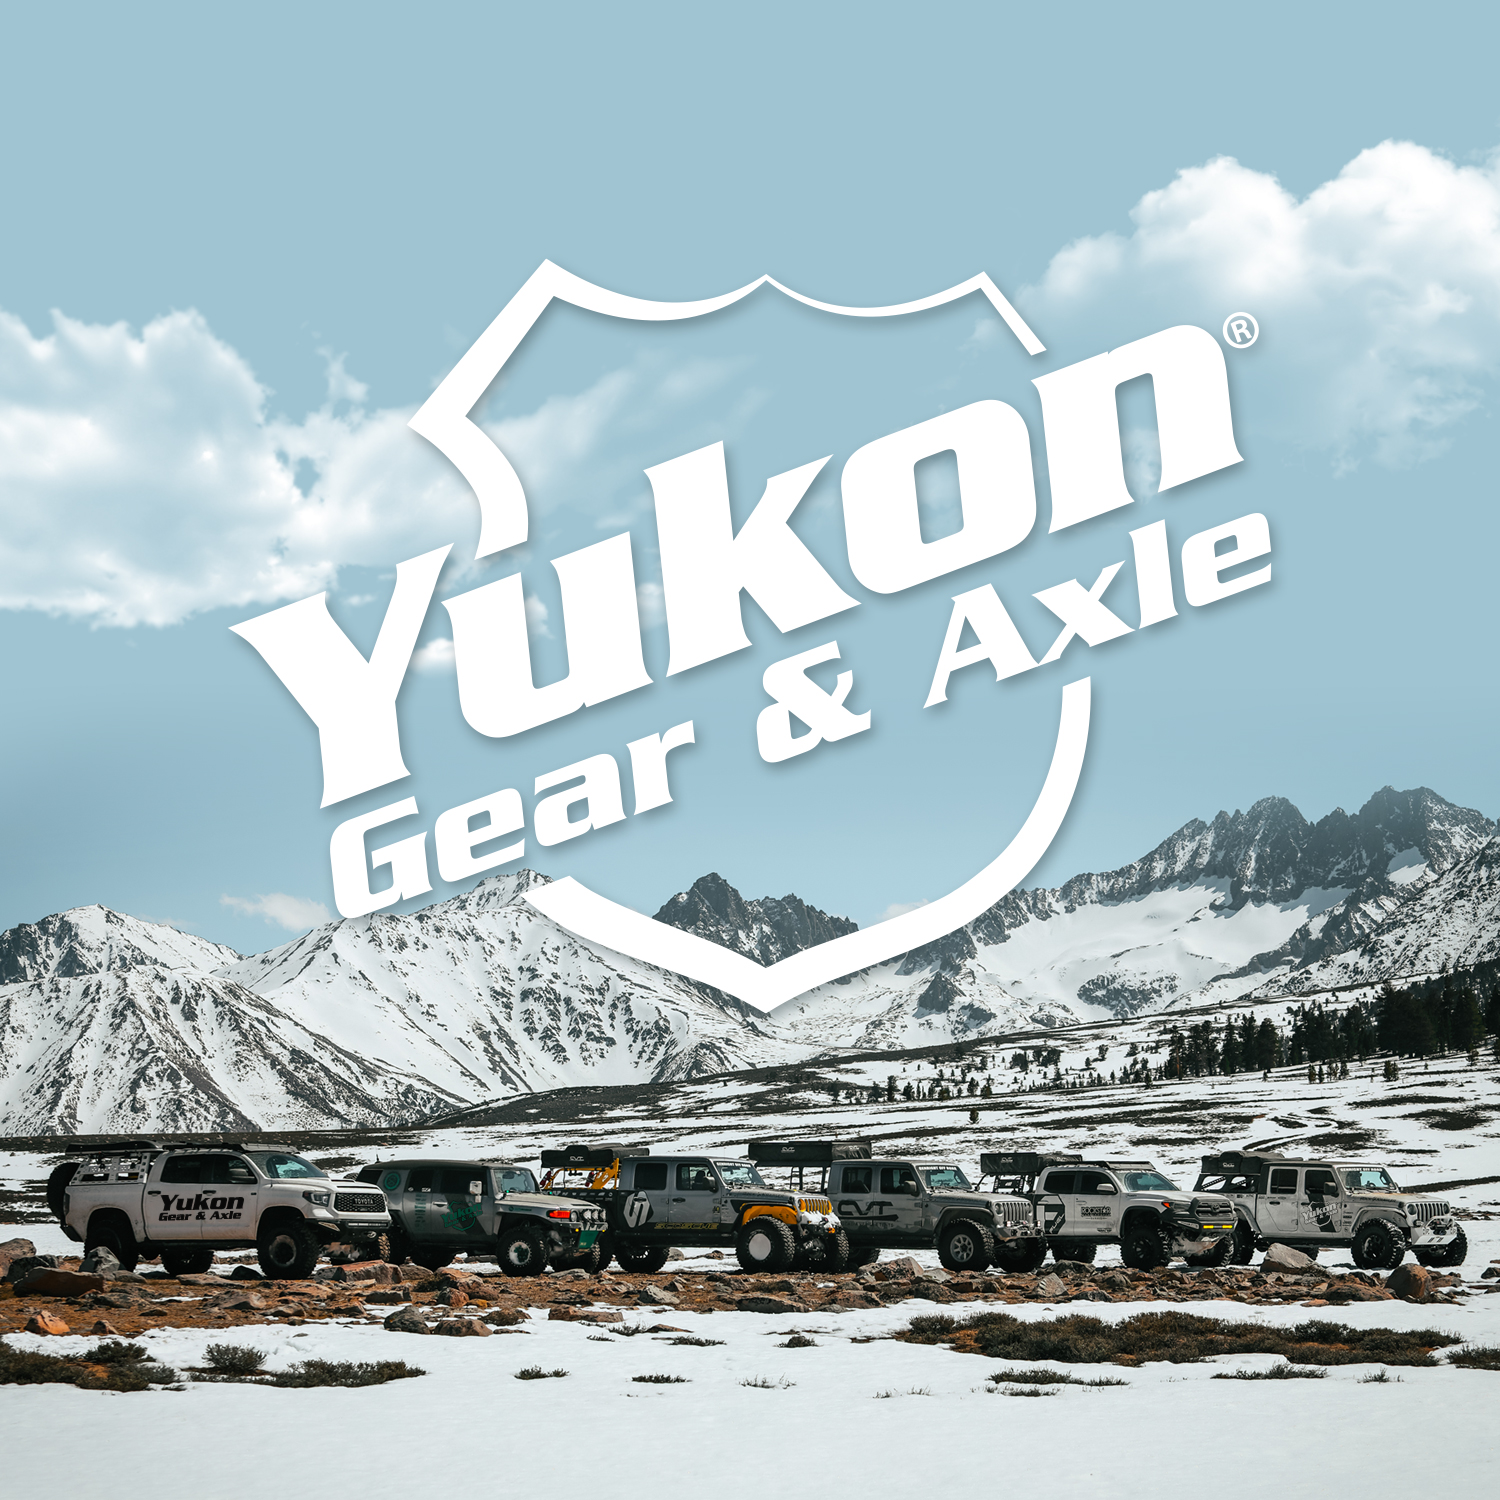 Yukon Grizzly locker for Dana 30, 27 spline, 3.73 & up. 